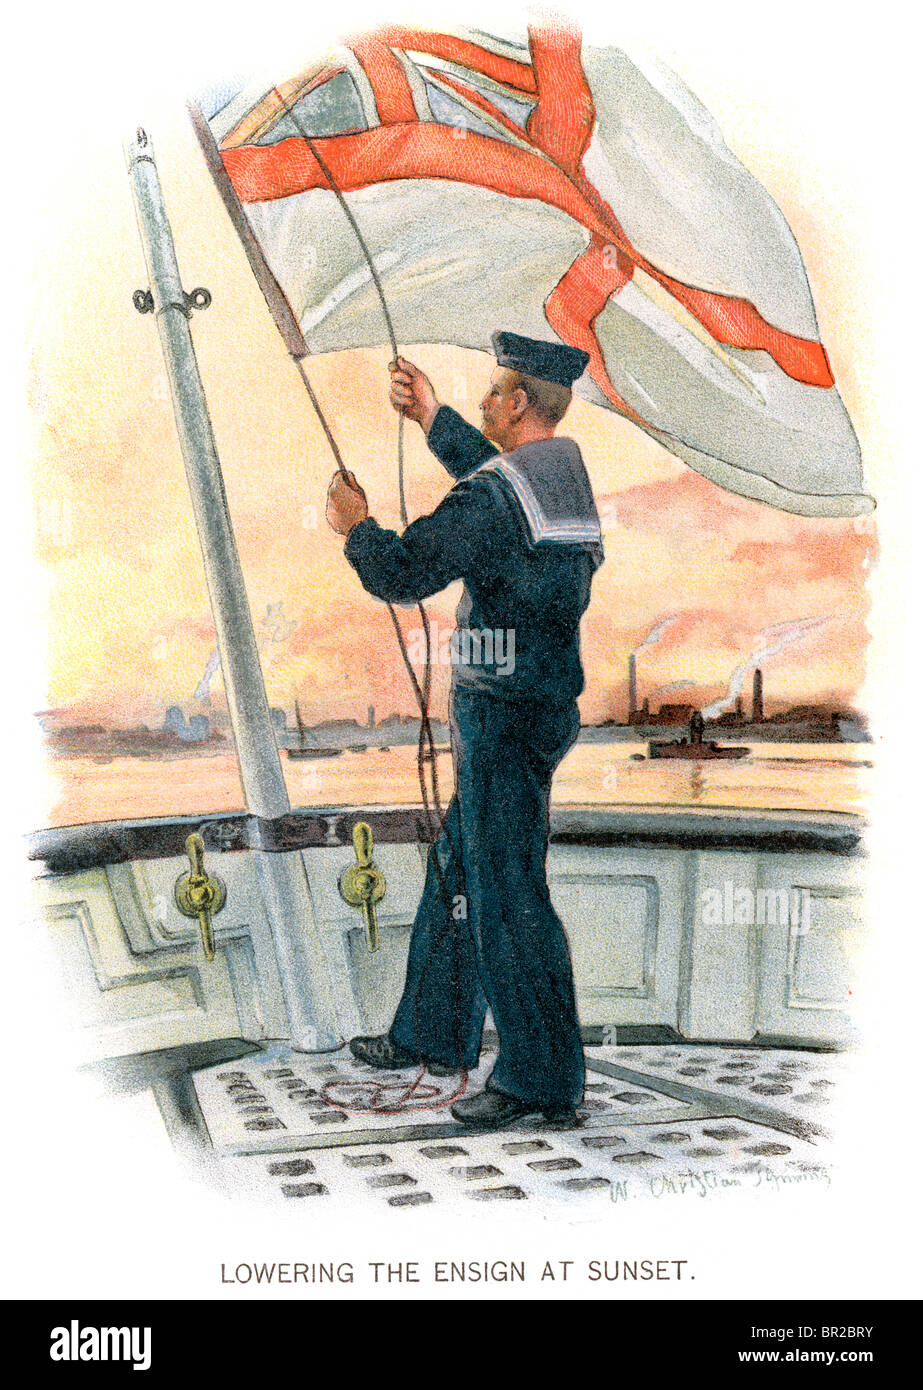 Späten viktorianischen Ära Seemann in der britischen Royal Navy senkt den Stern am Ende des Tages. (Symons 99) Stockfoto